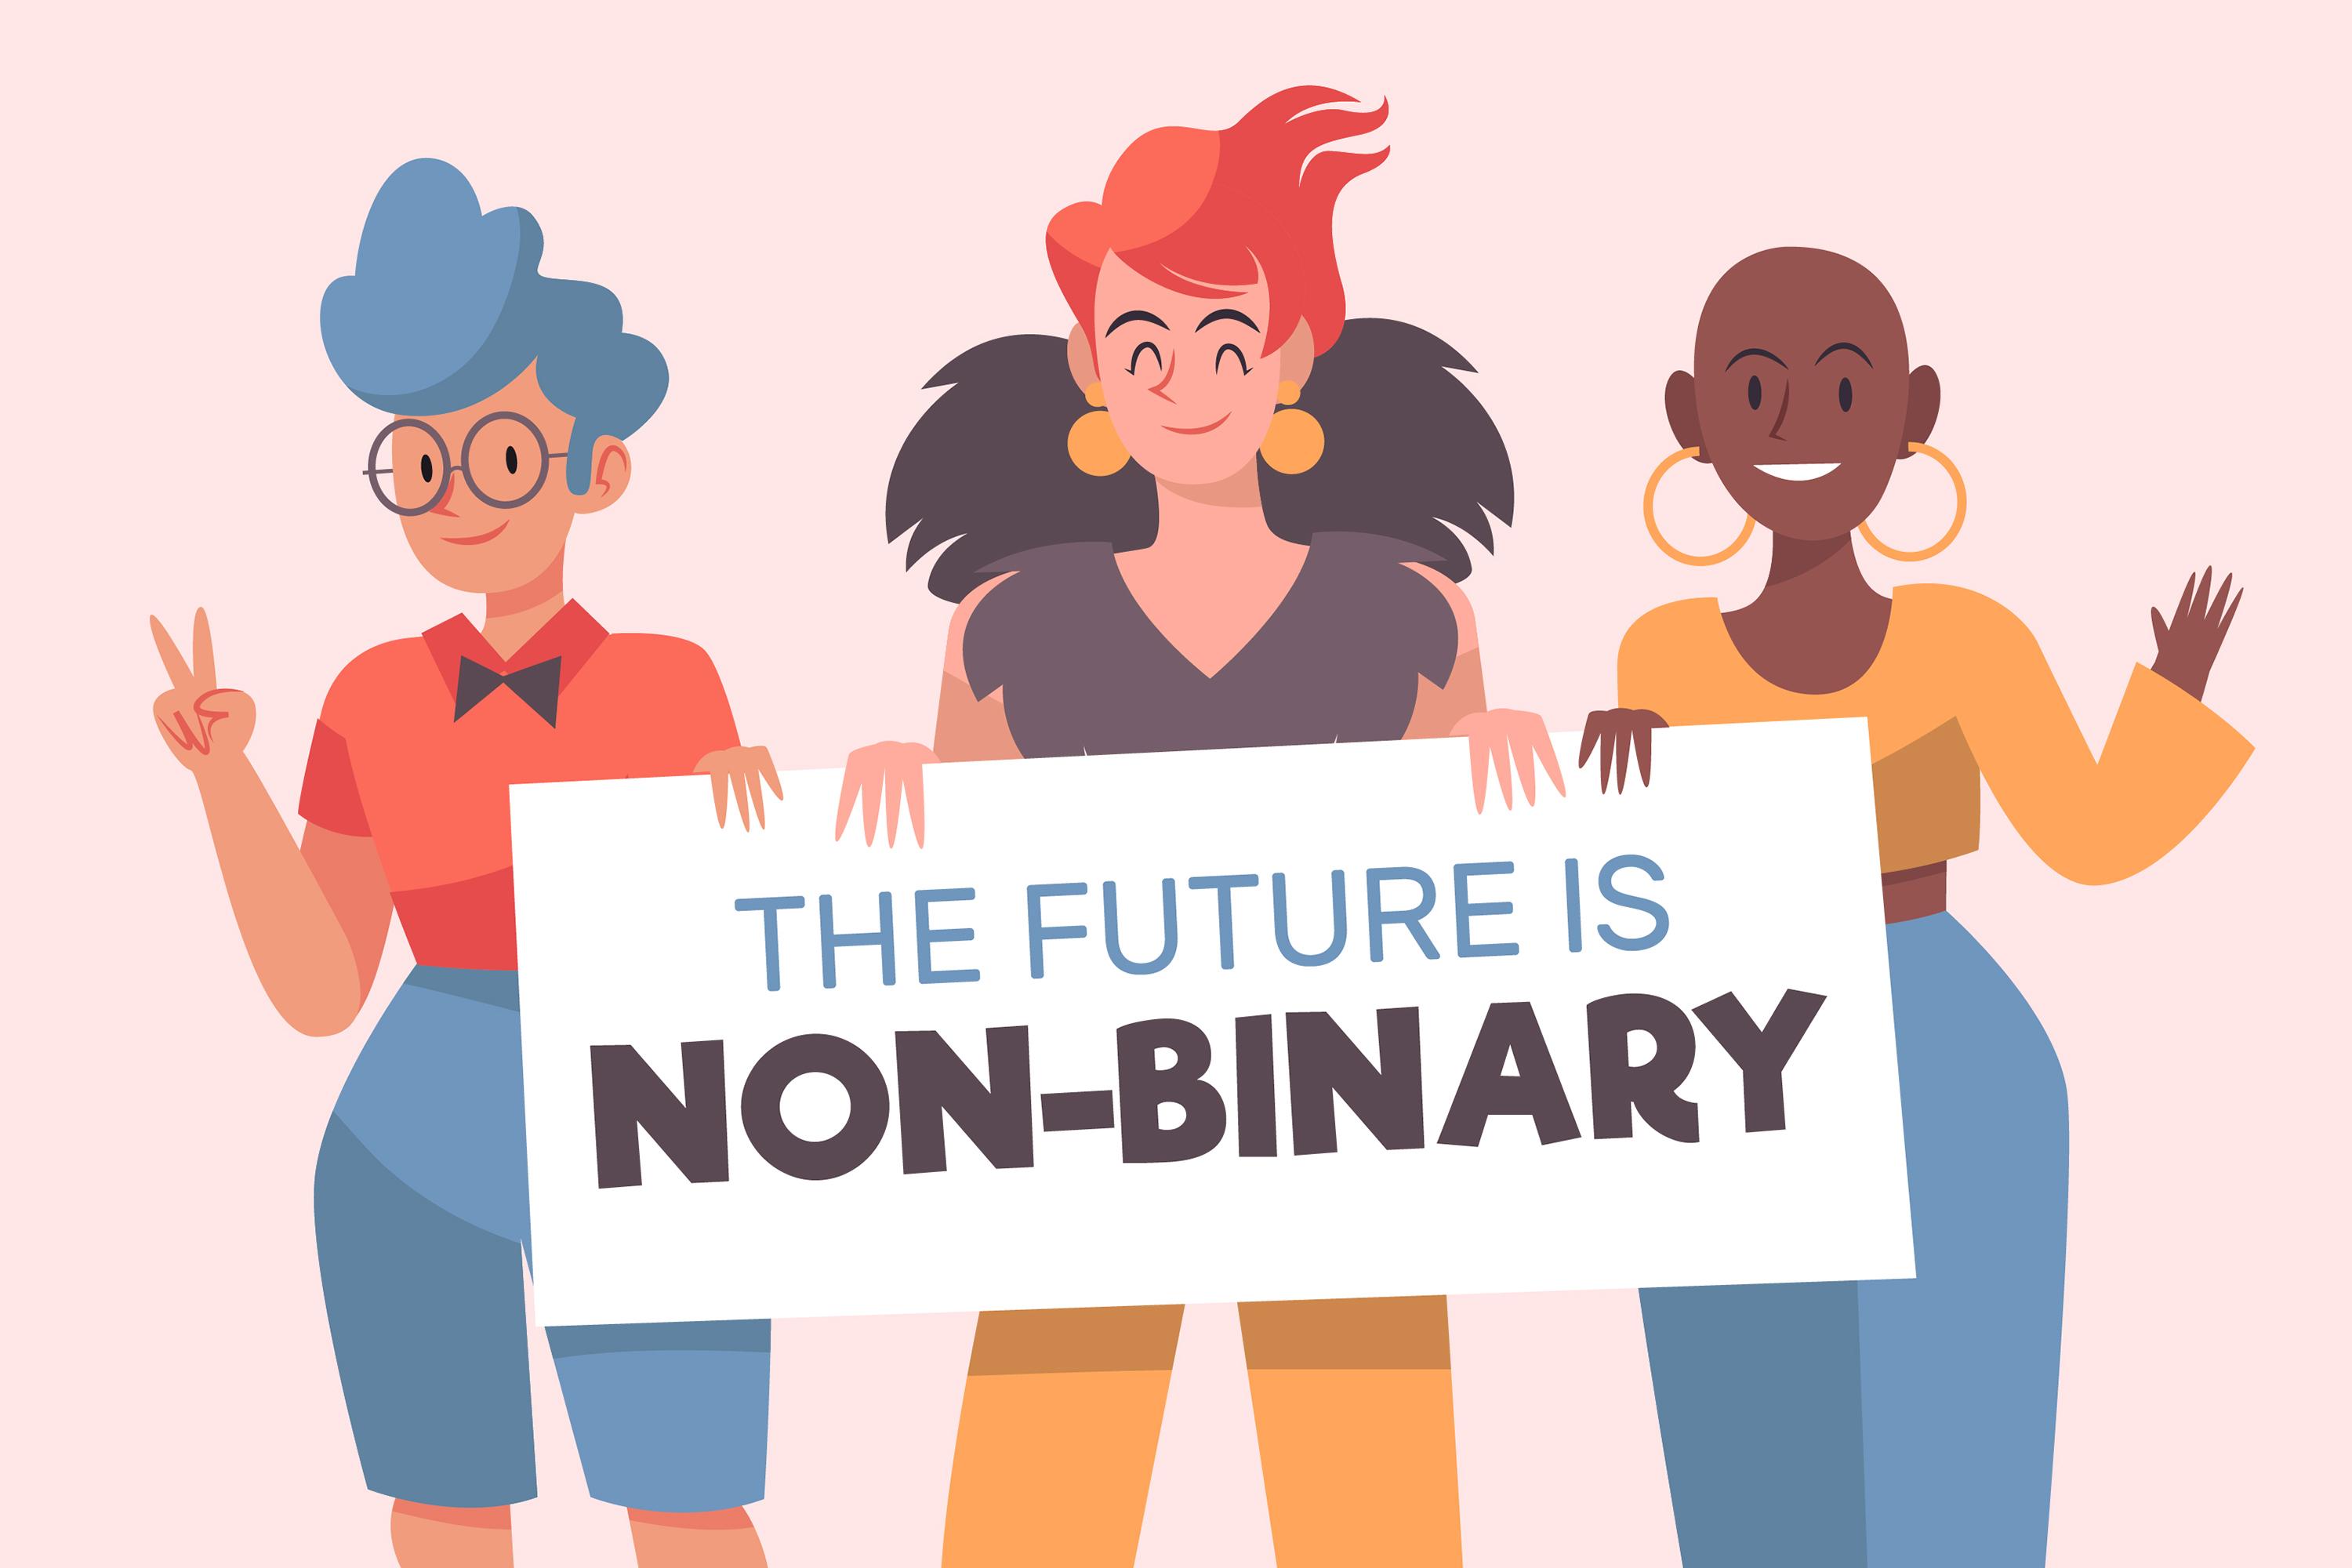 Drei Personen stehen vor einem rosafarbenen Hintergrund und halten ein Schild mit der Aufschrift "The Future is non-binary" in der Hand